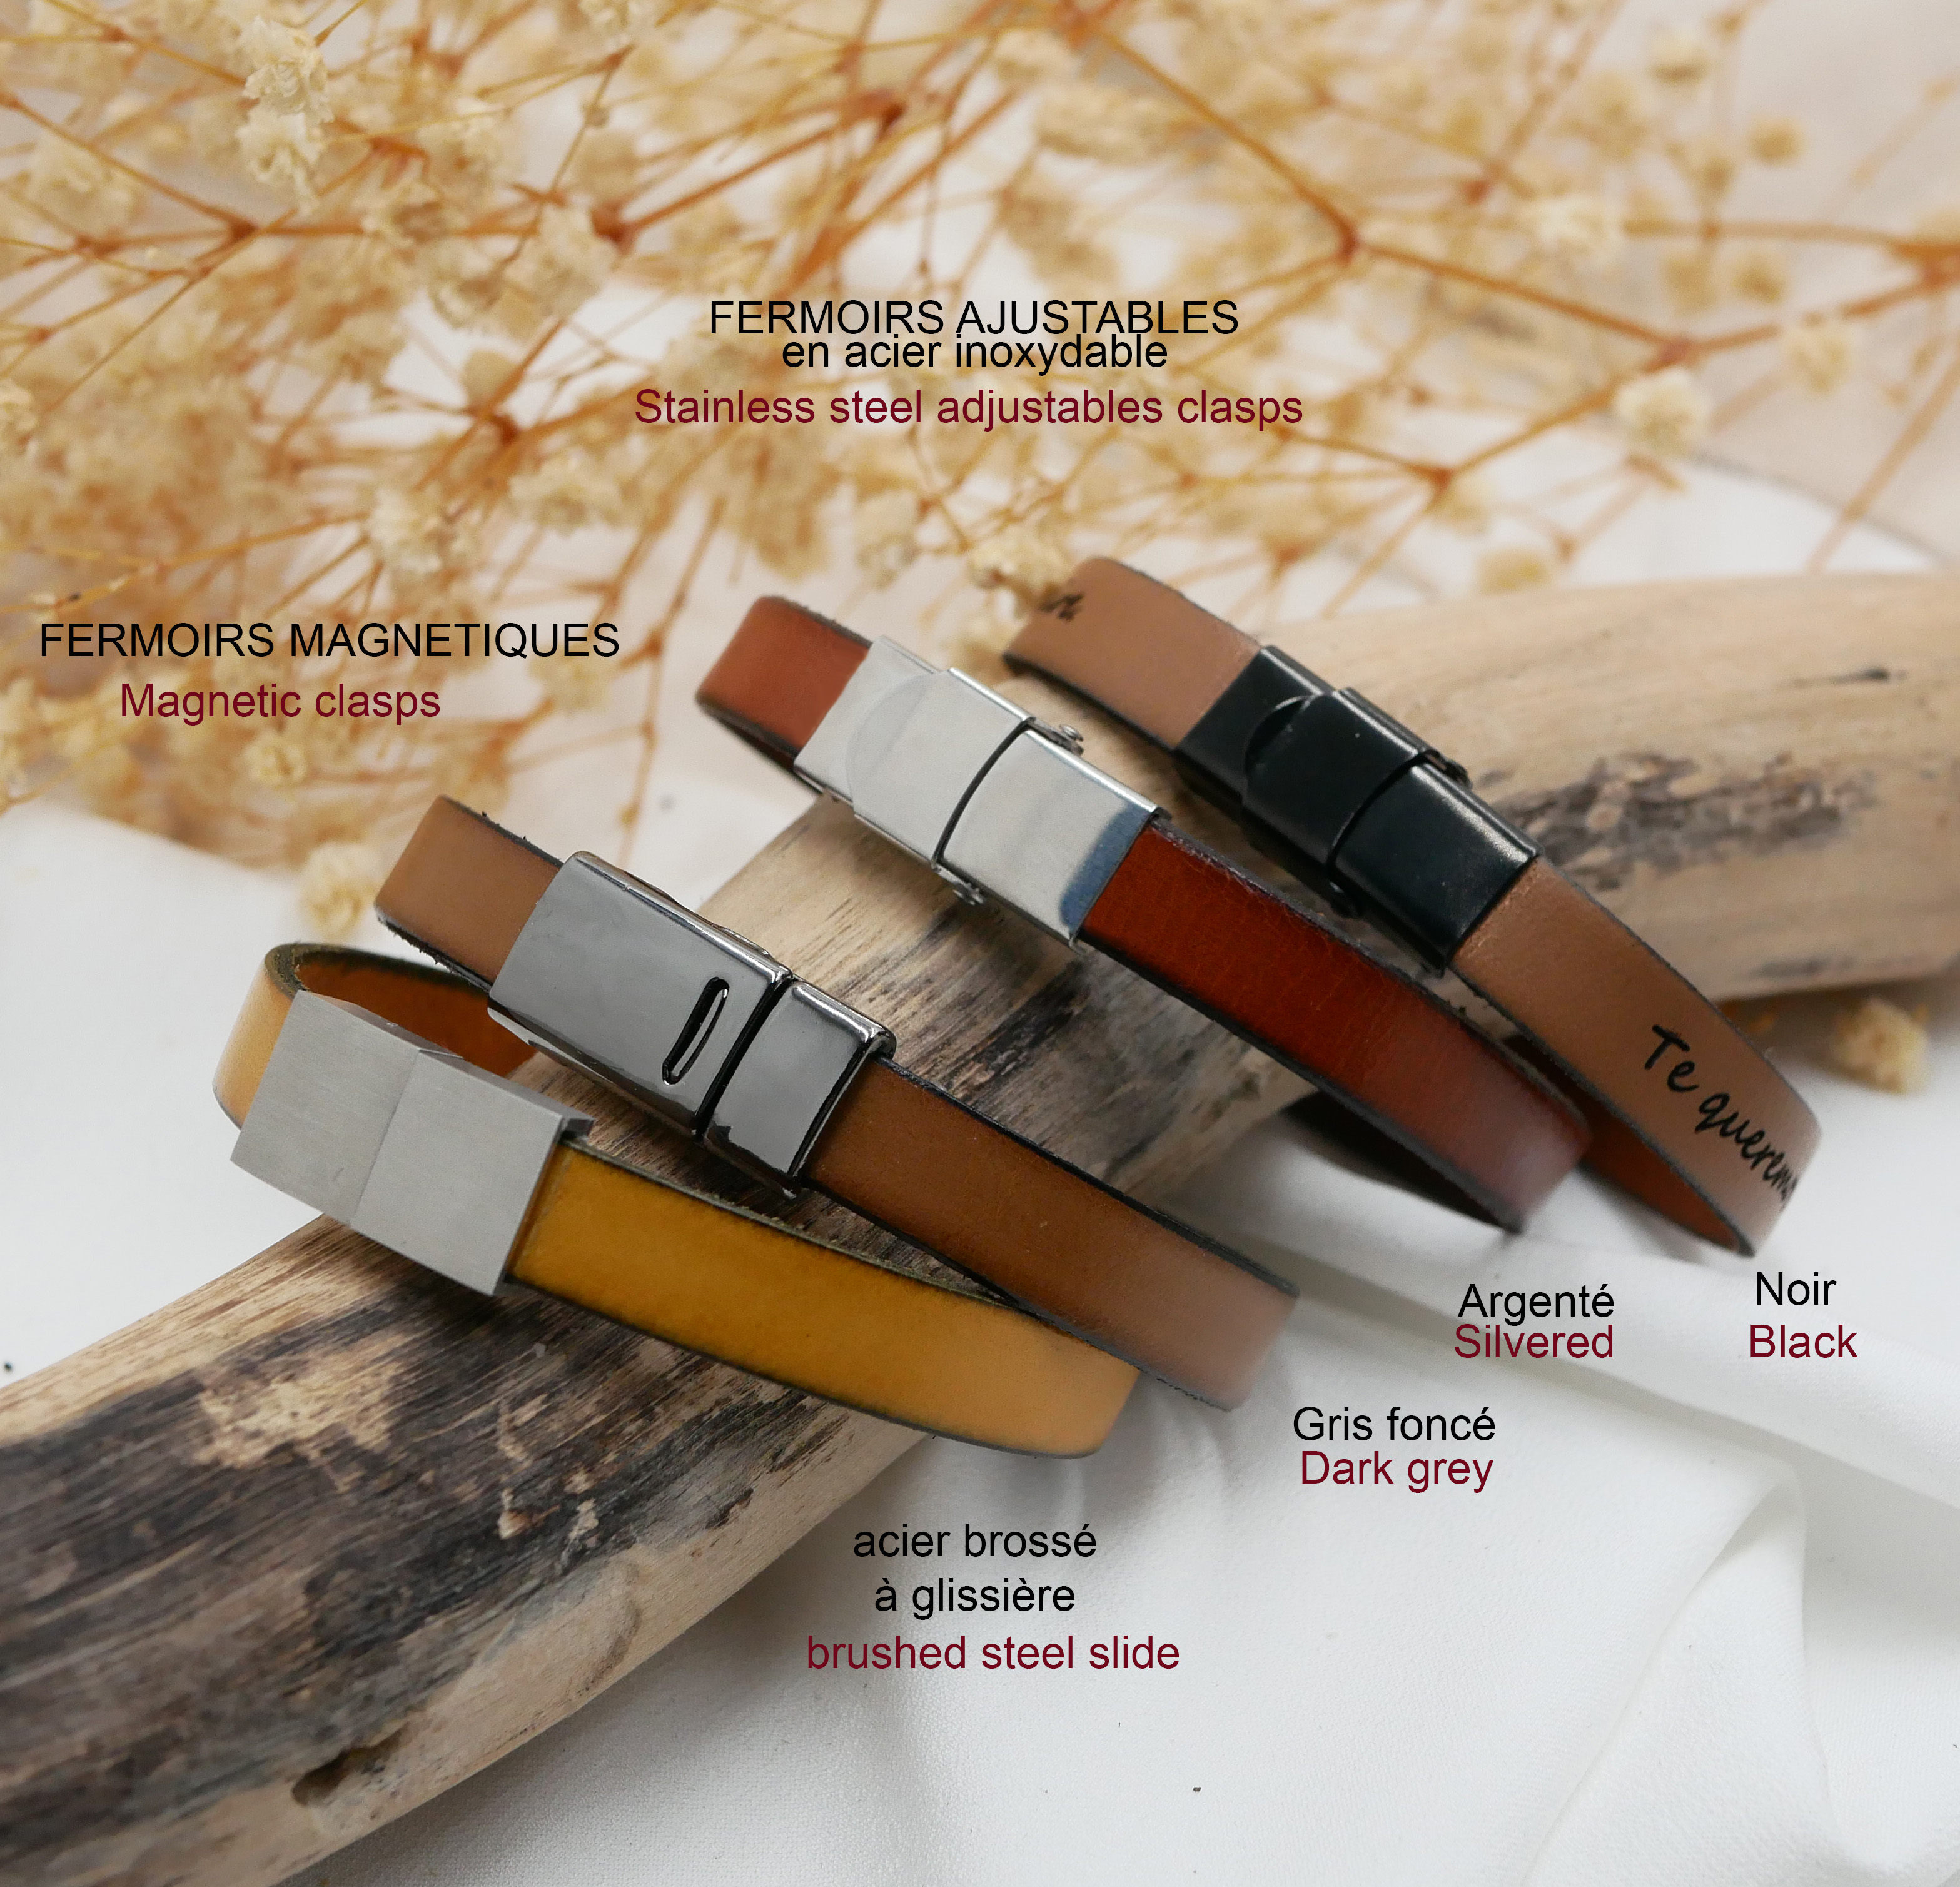 Bracelet cuir personnalisable avec ornement central ovale encadré de cuirs fins 